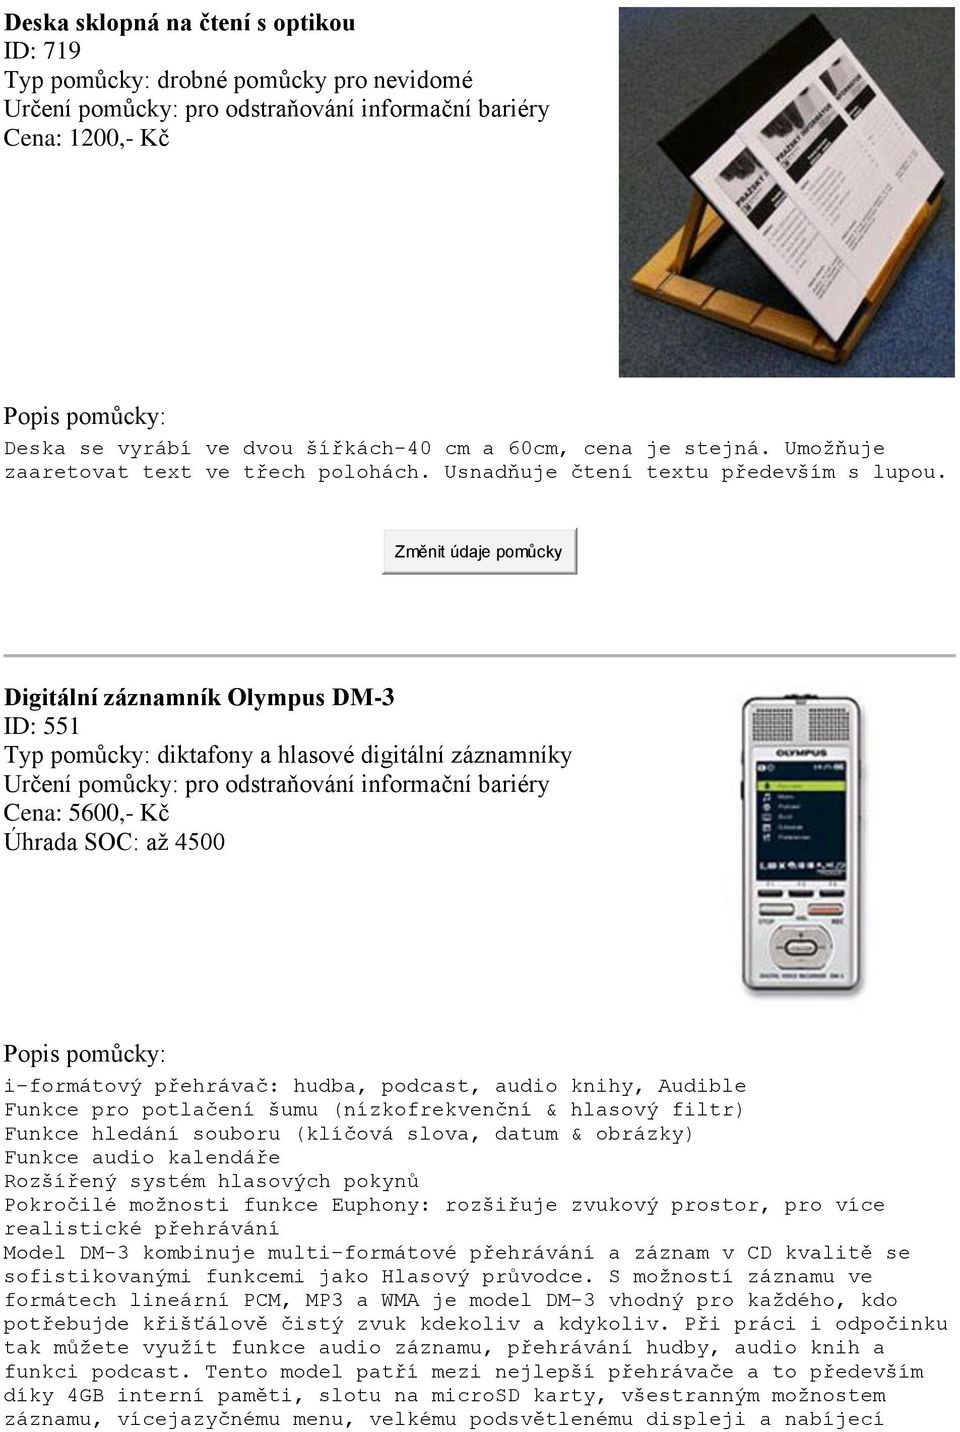 Digitální záznamník Olympus DM-3 ID: 551 Typ pomůcky: diktafony a hlasové digitální záznamníky Určení pomůcky: pro odstraňování informační bariéry Cena: 5600,- Kč Úhrada SOC: až 4500 i-formátový